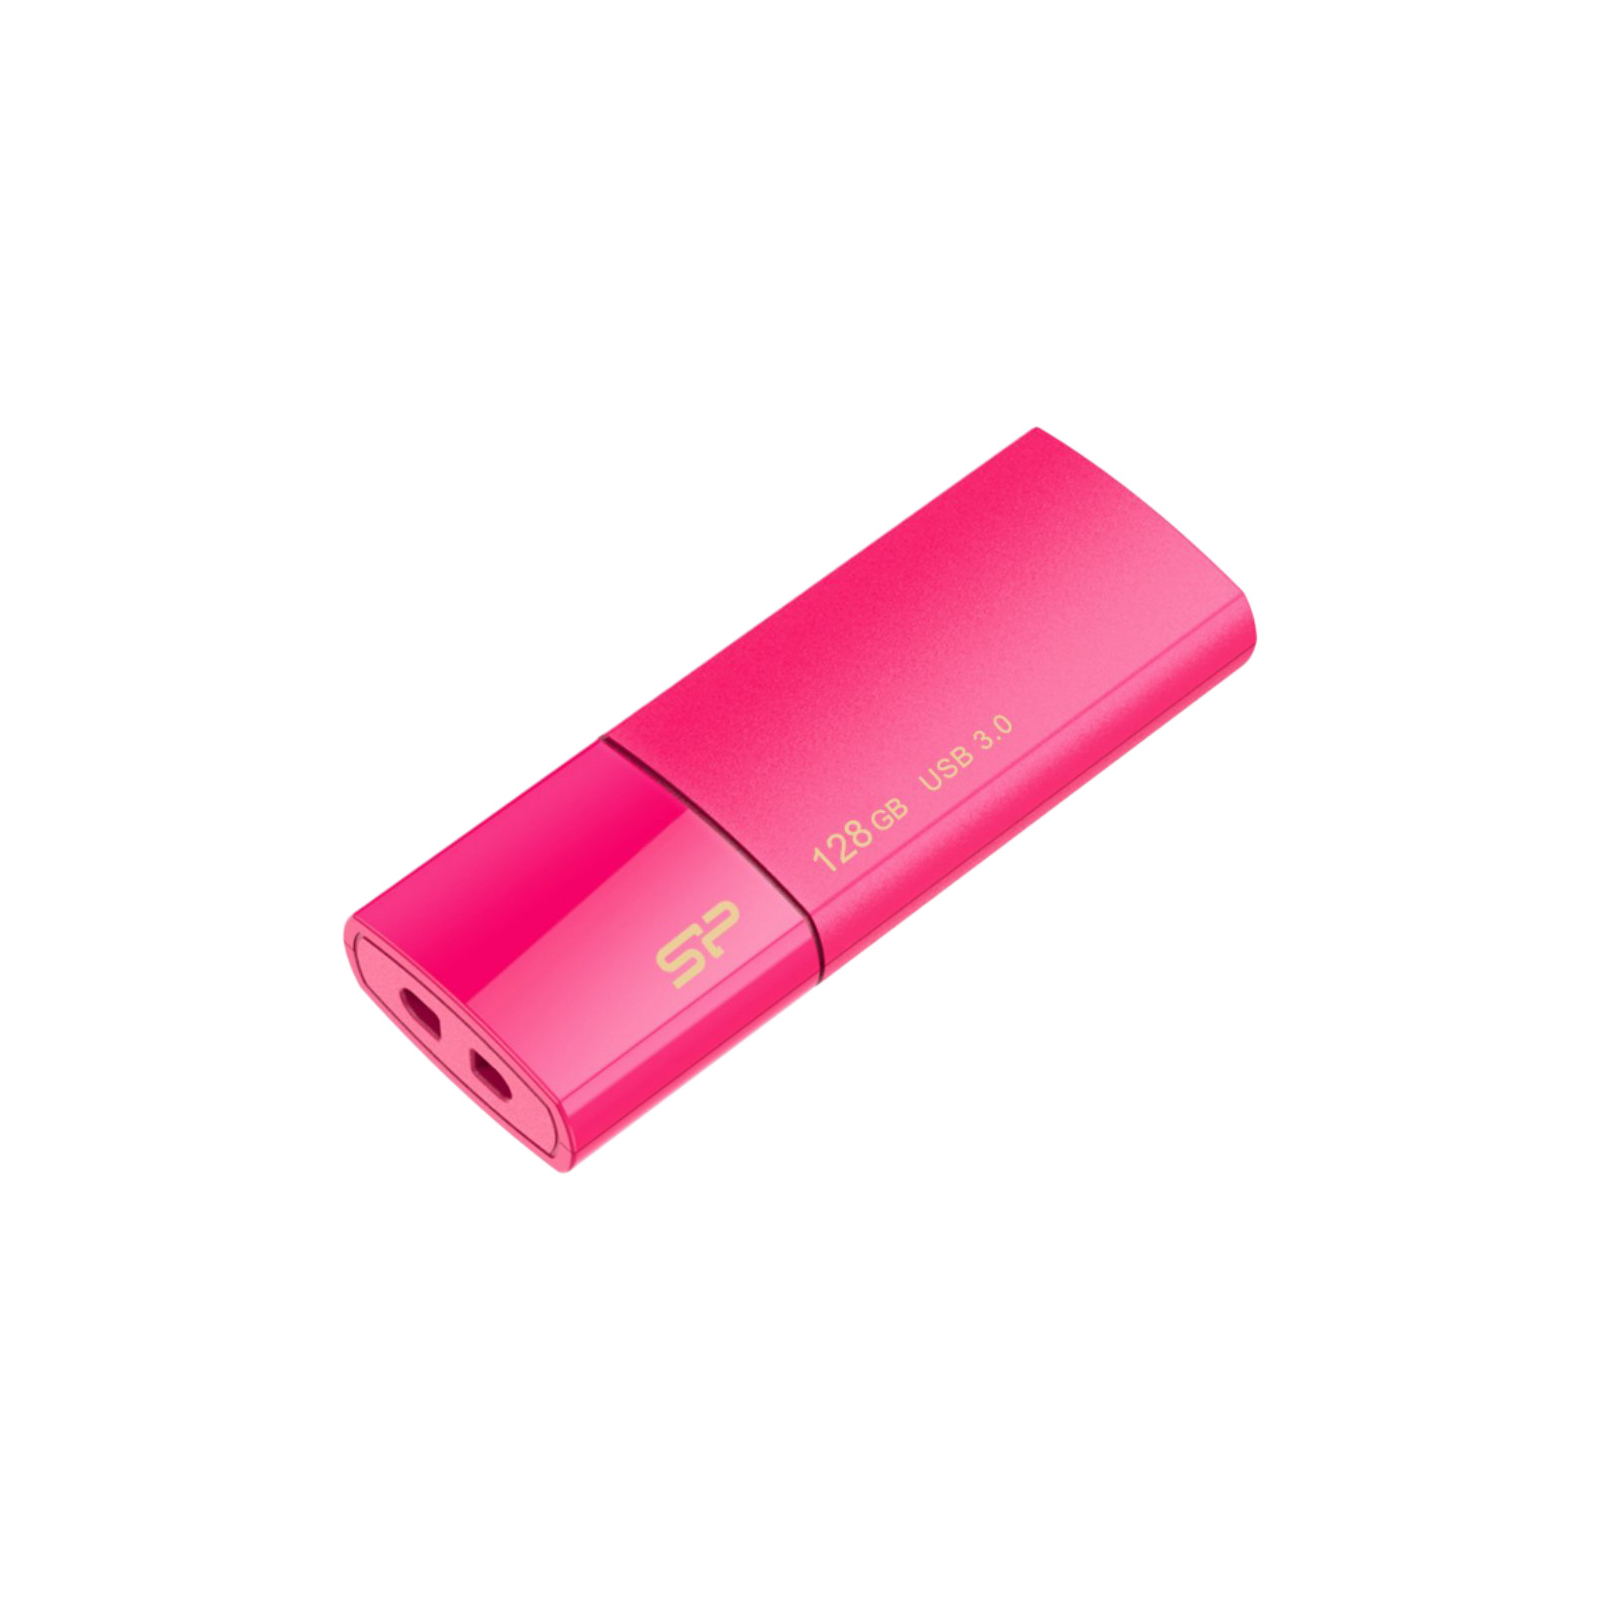 USB флеш накопичувач Silicon Power 128GB Blaze B05 Pink USB 3.0 (SP128GBUF3B05V1H) зображення 3